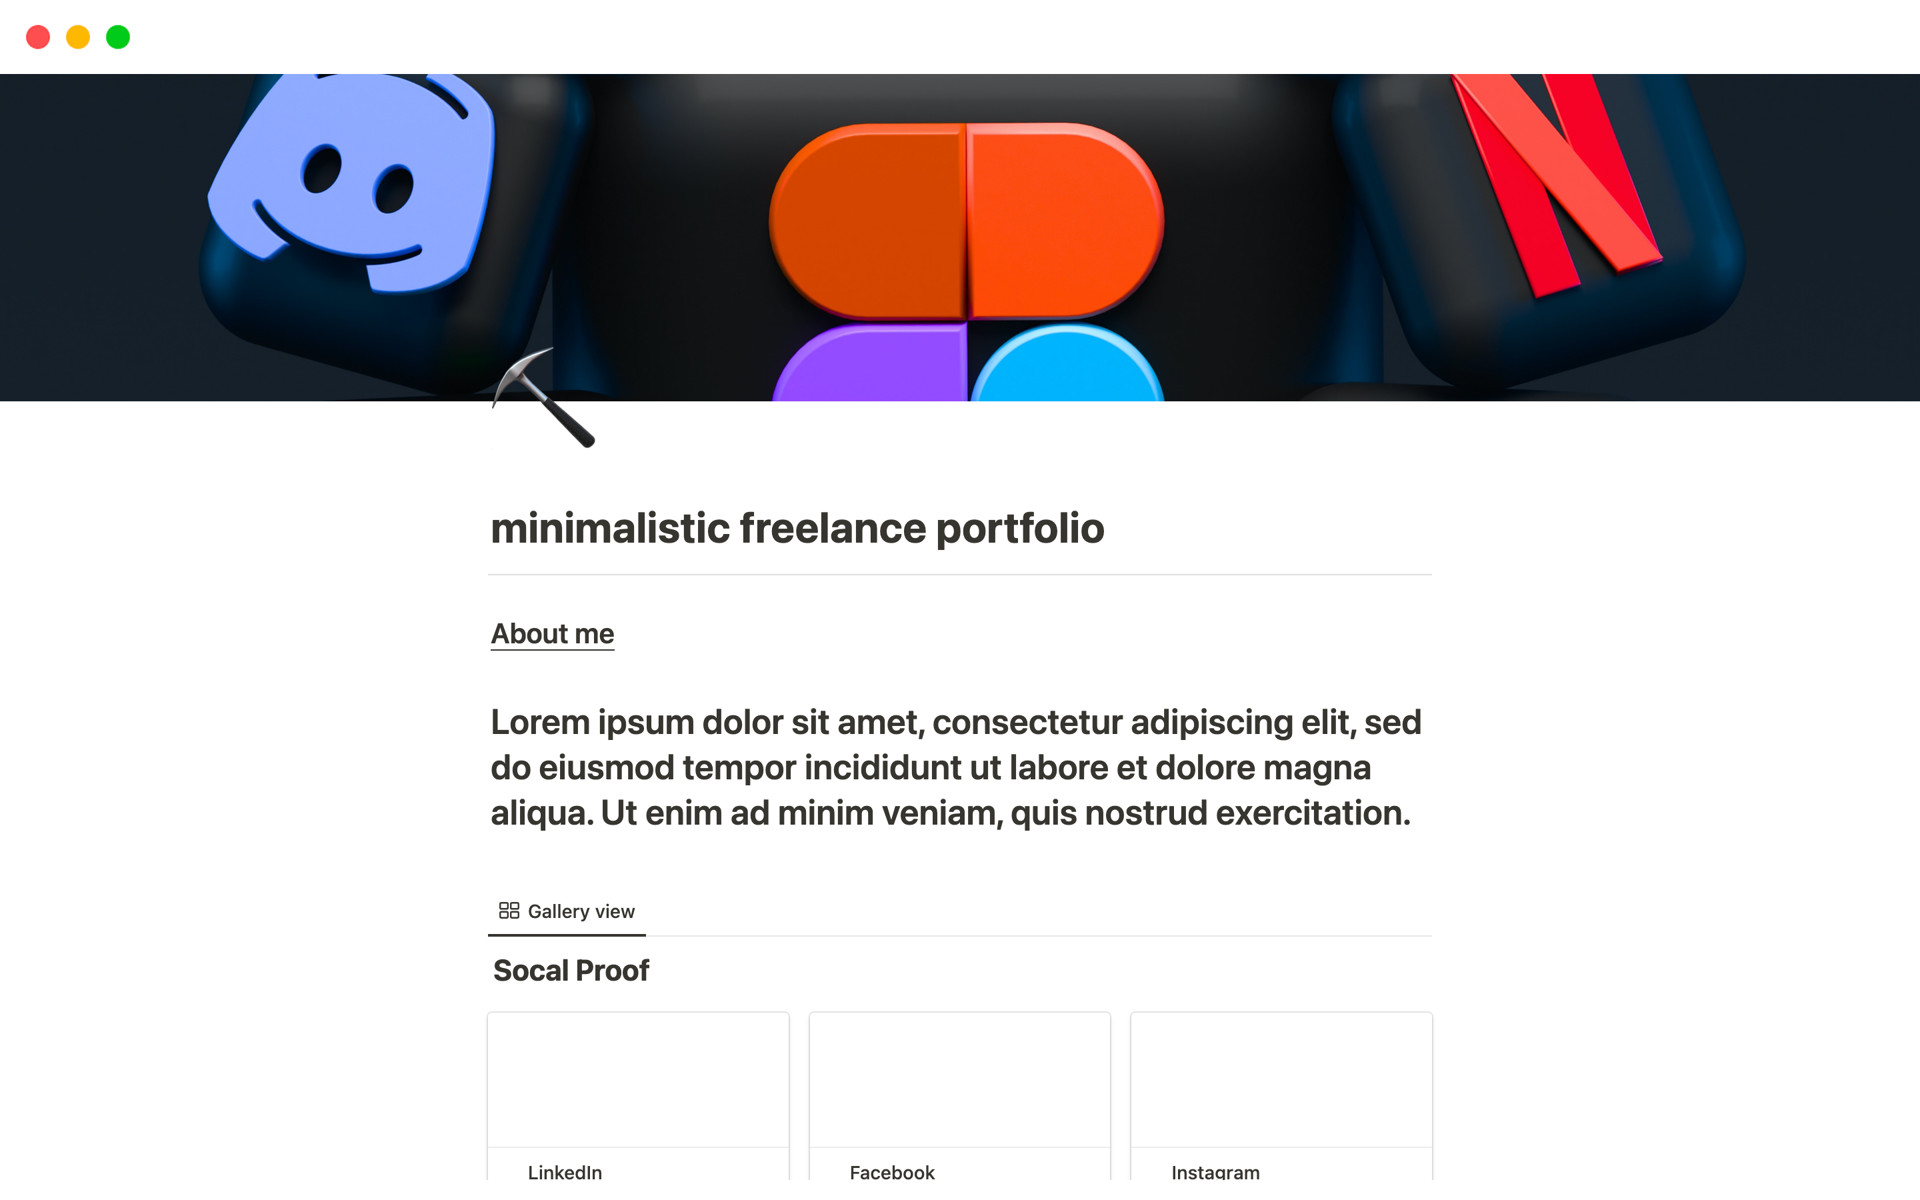 Vista previa de una plantilla para minimalistic freelance portfolio